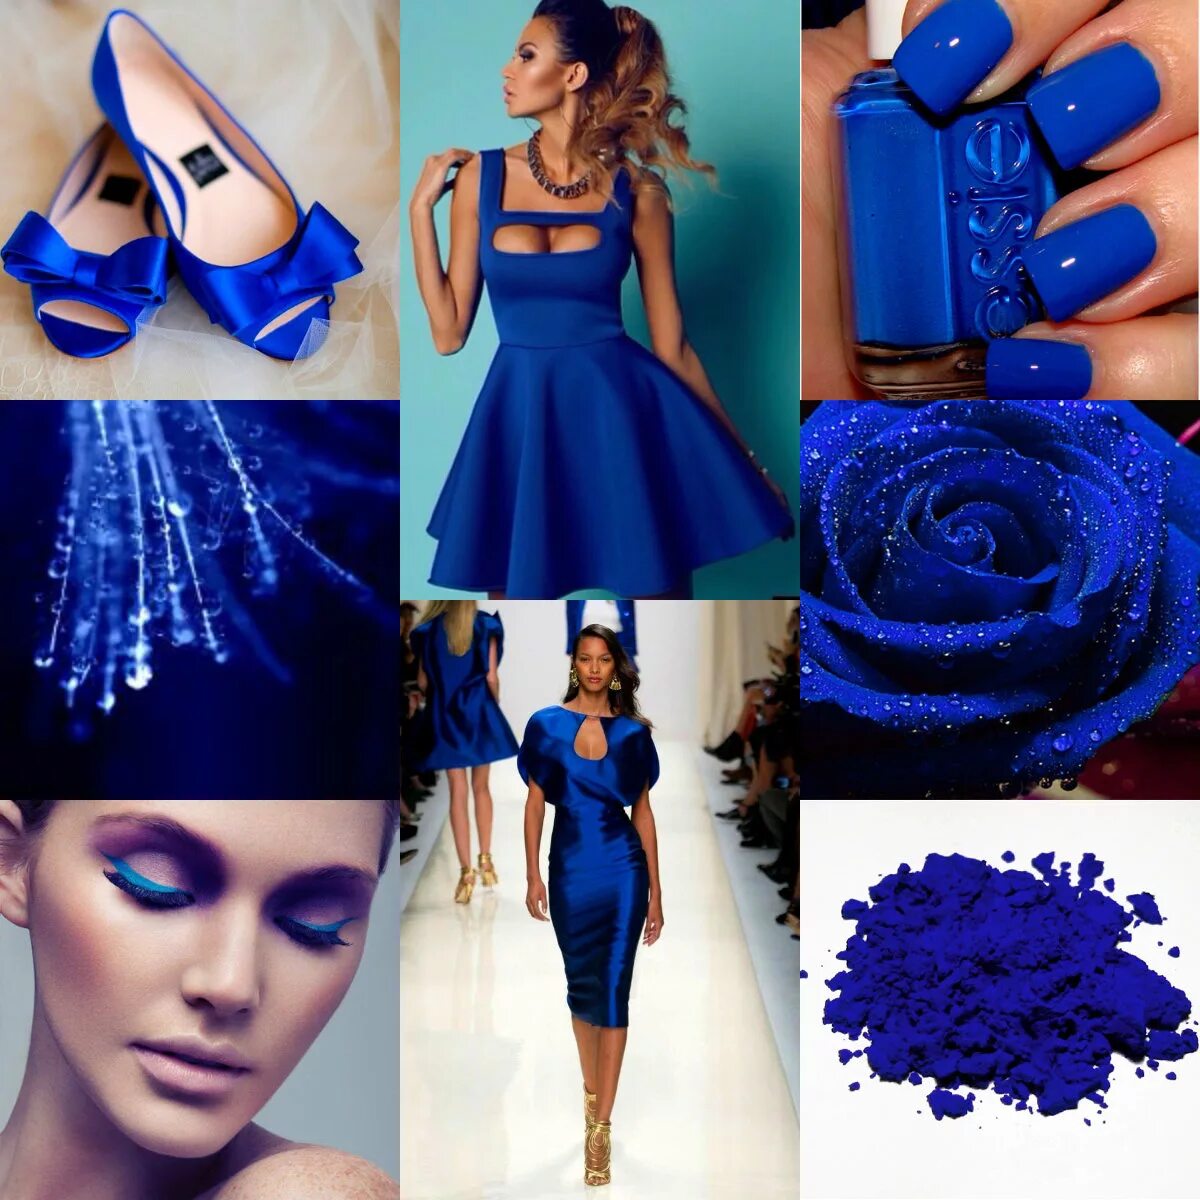 Цвет электро. Ультрамарин и индиго. Глубокий синий цвет. Сочетание с синим. Маникюр под синее платье на свадьбу.